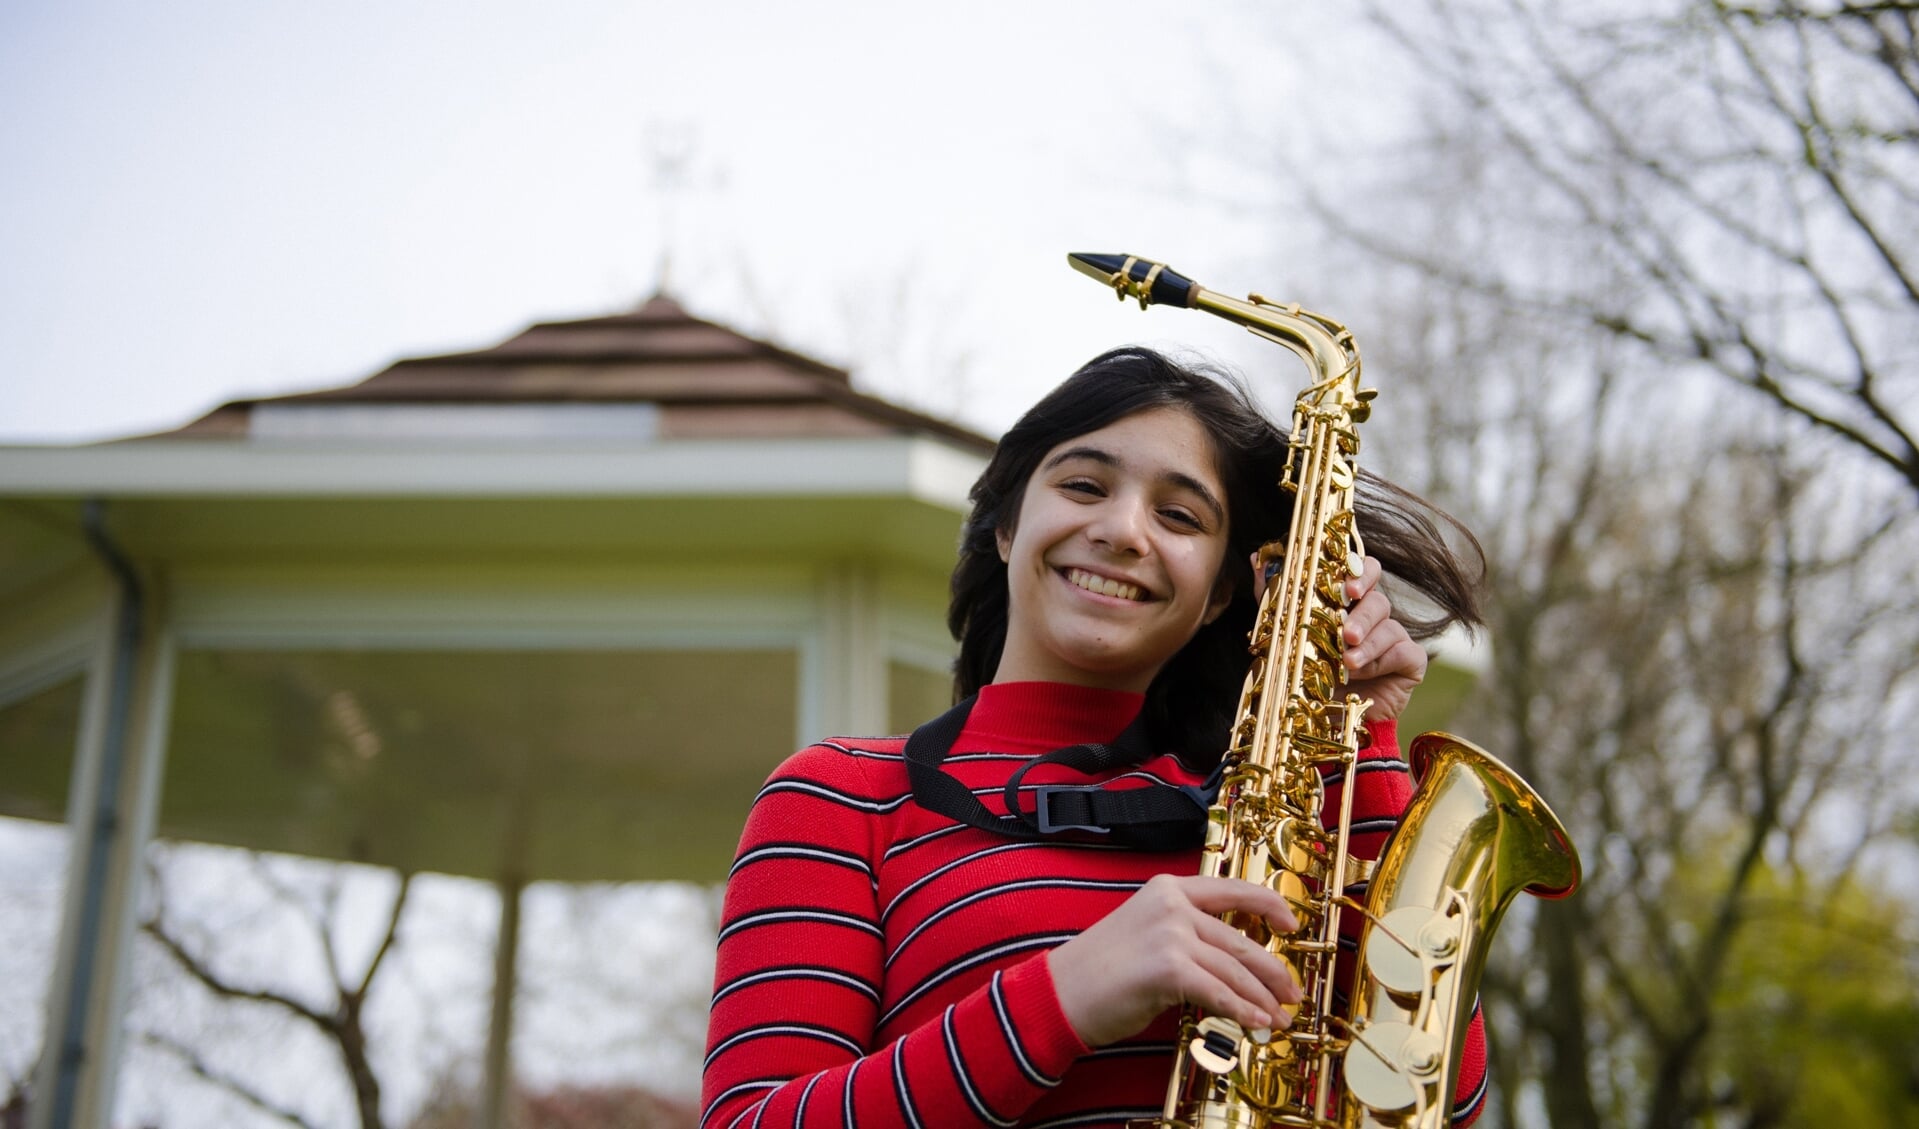 De saxofoon is één van de vele instrumenten waaruit je op de Proeflesdag kunt kiezen.